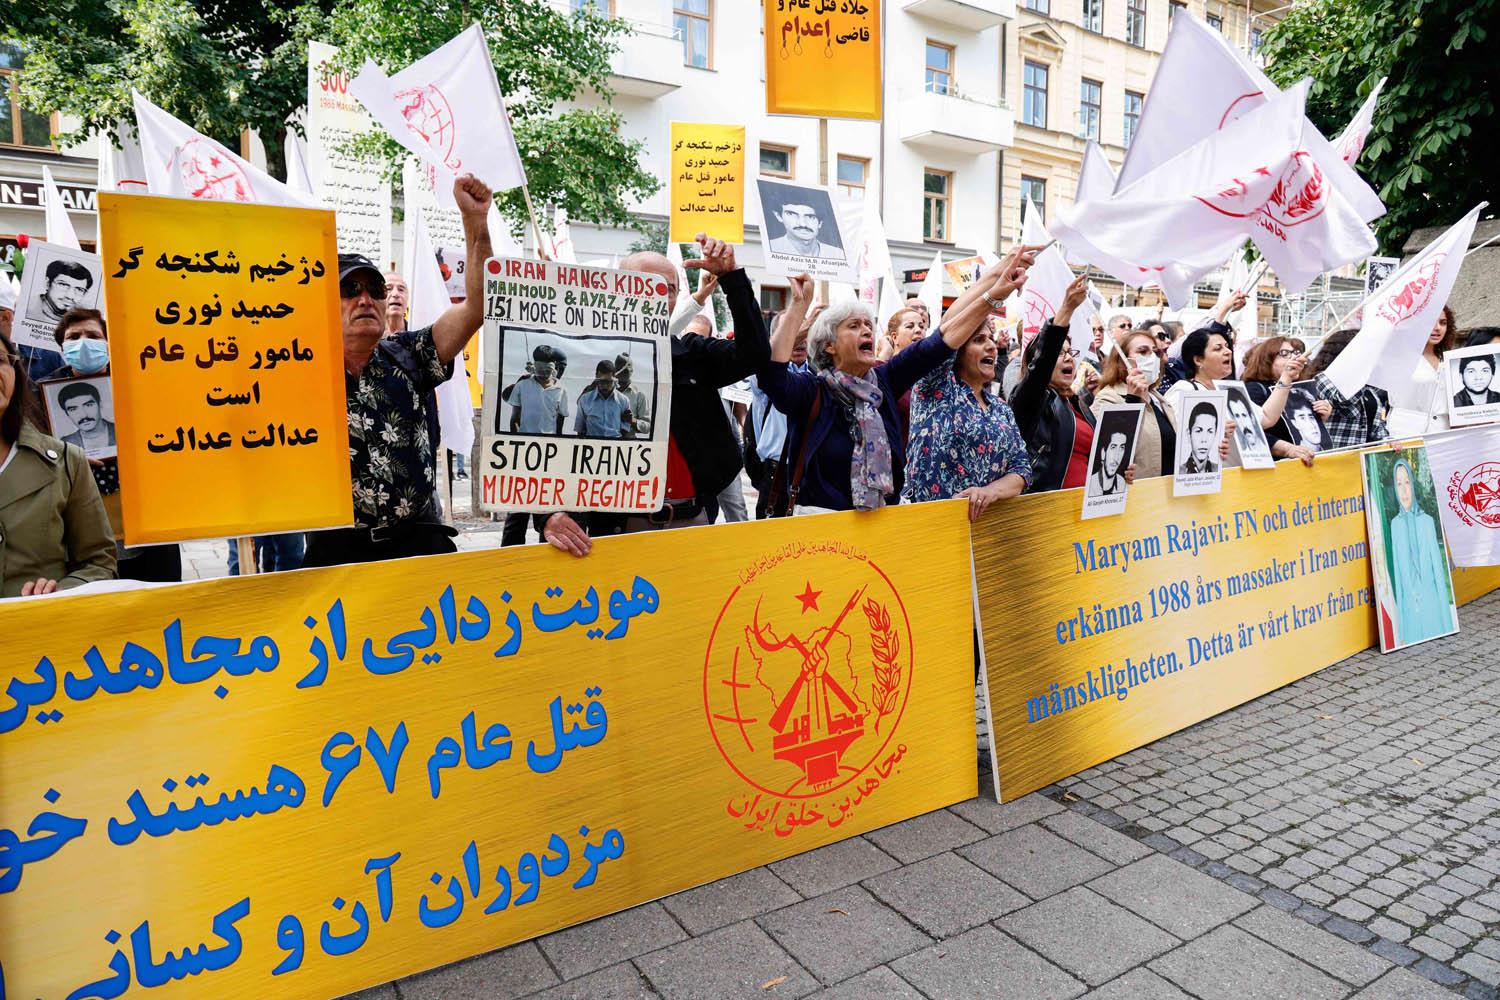 تظاهرة لمجاهدي خلق وذوي ضحايا مجزرة السجناء الايرانيين عام 1988 أمام مبنى المحكمة التي تنظر قضية حميد نوري في السويد